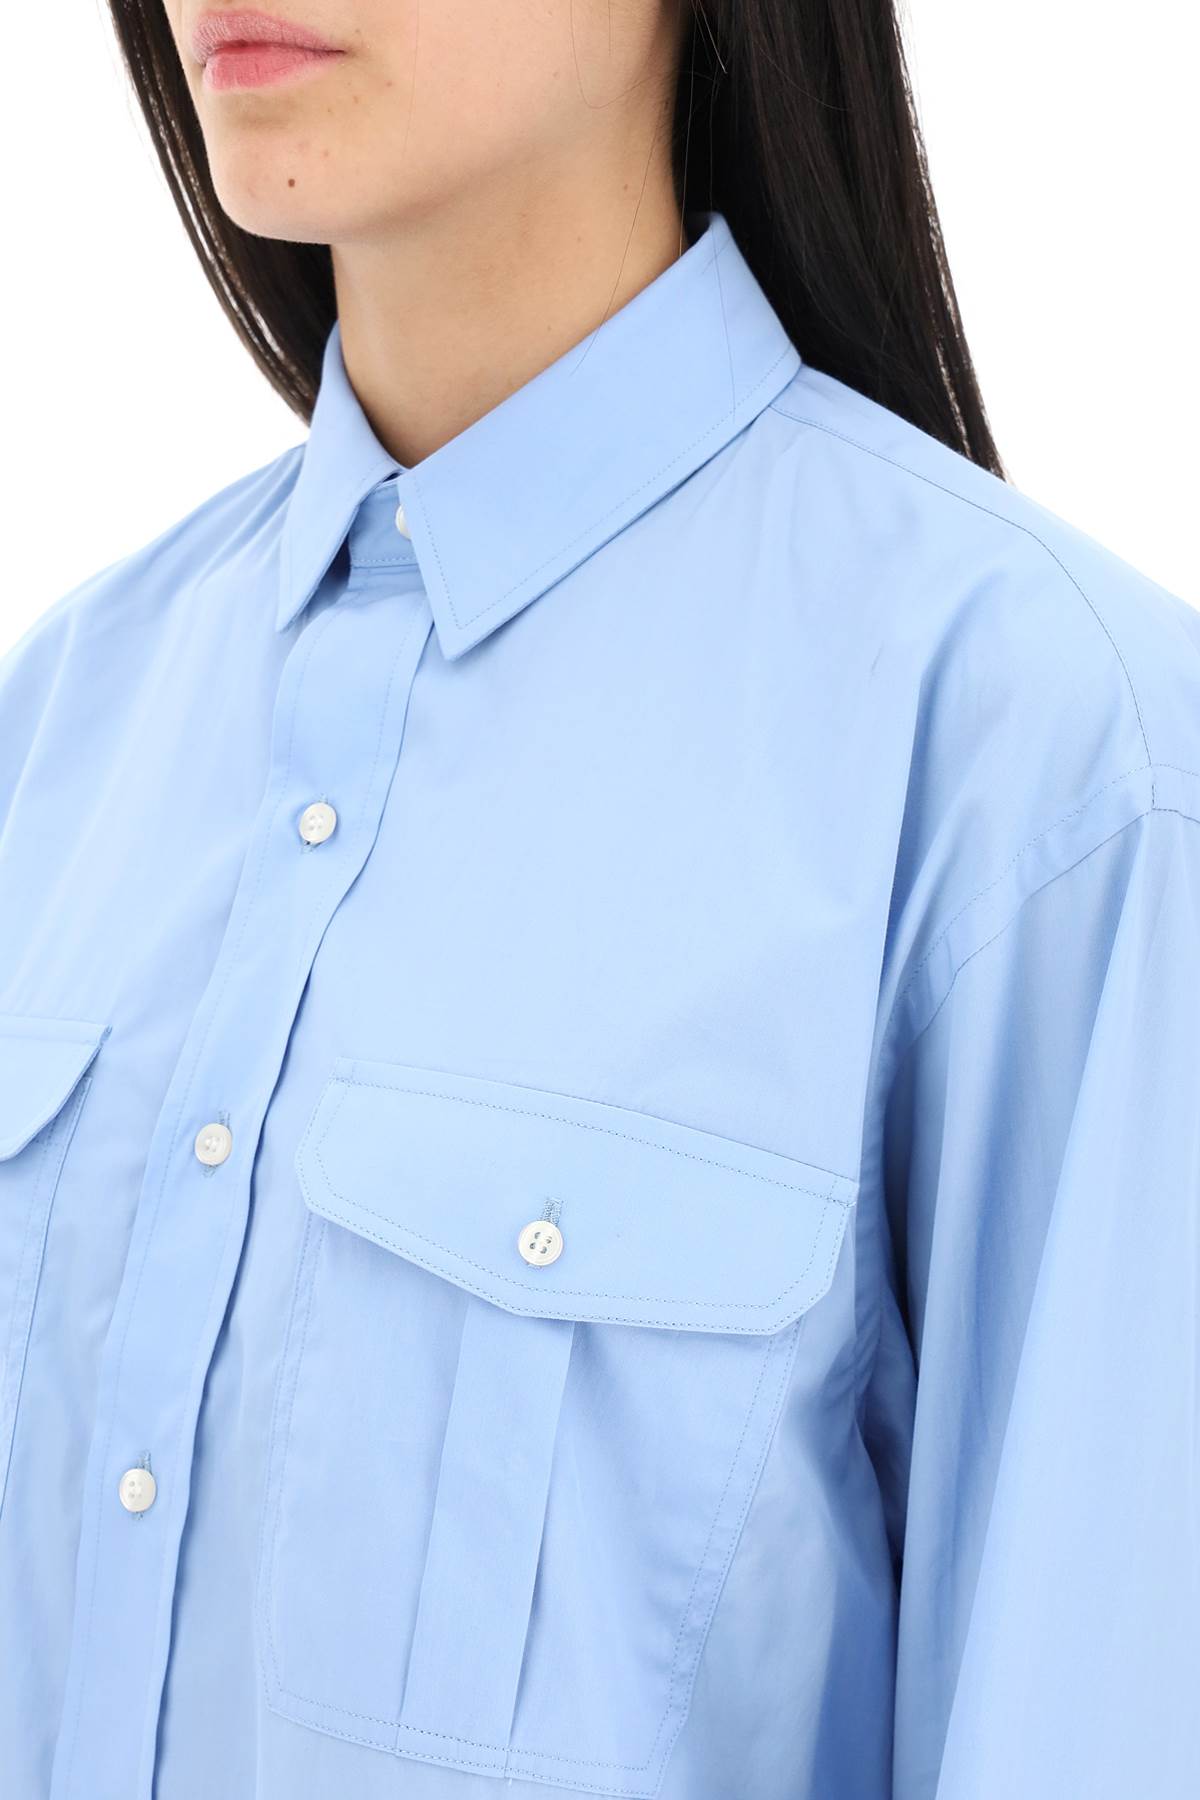 Wardrobe.Nyc Oversized Shirt   Blue